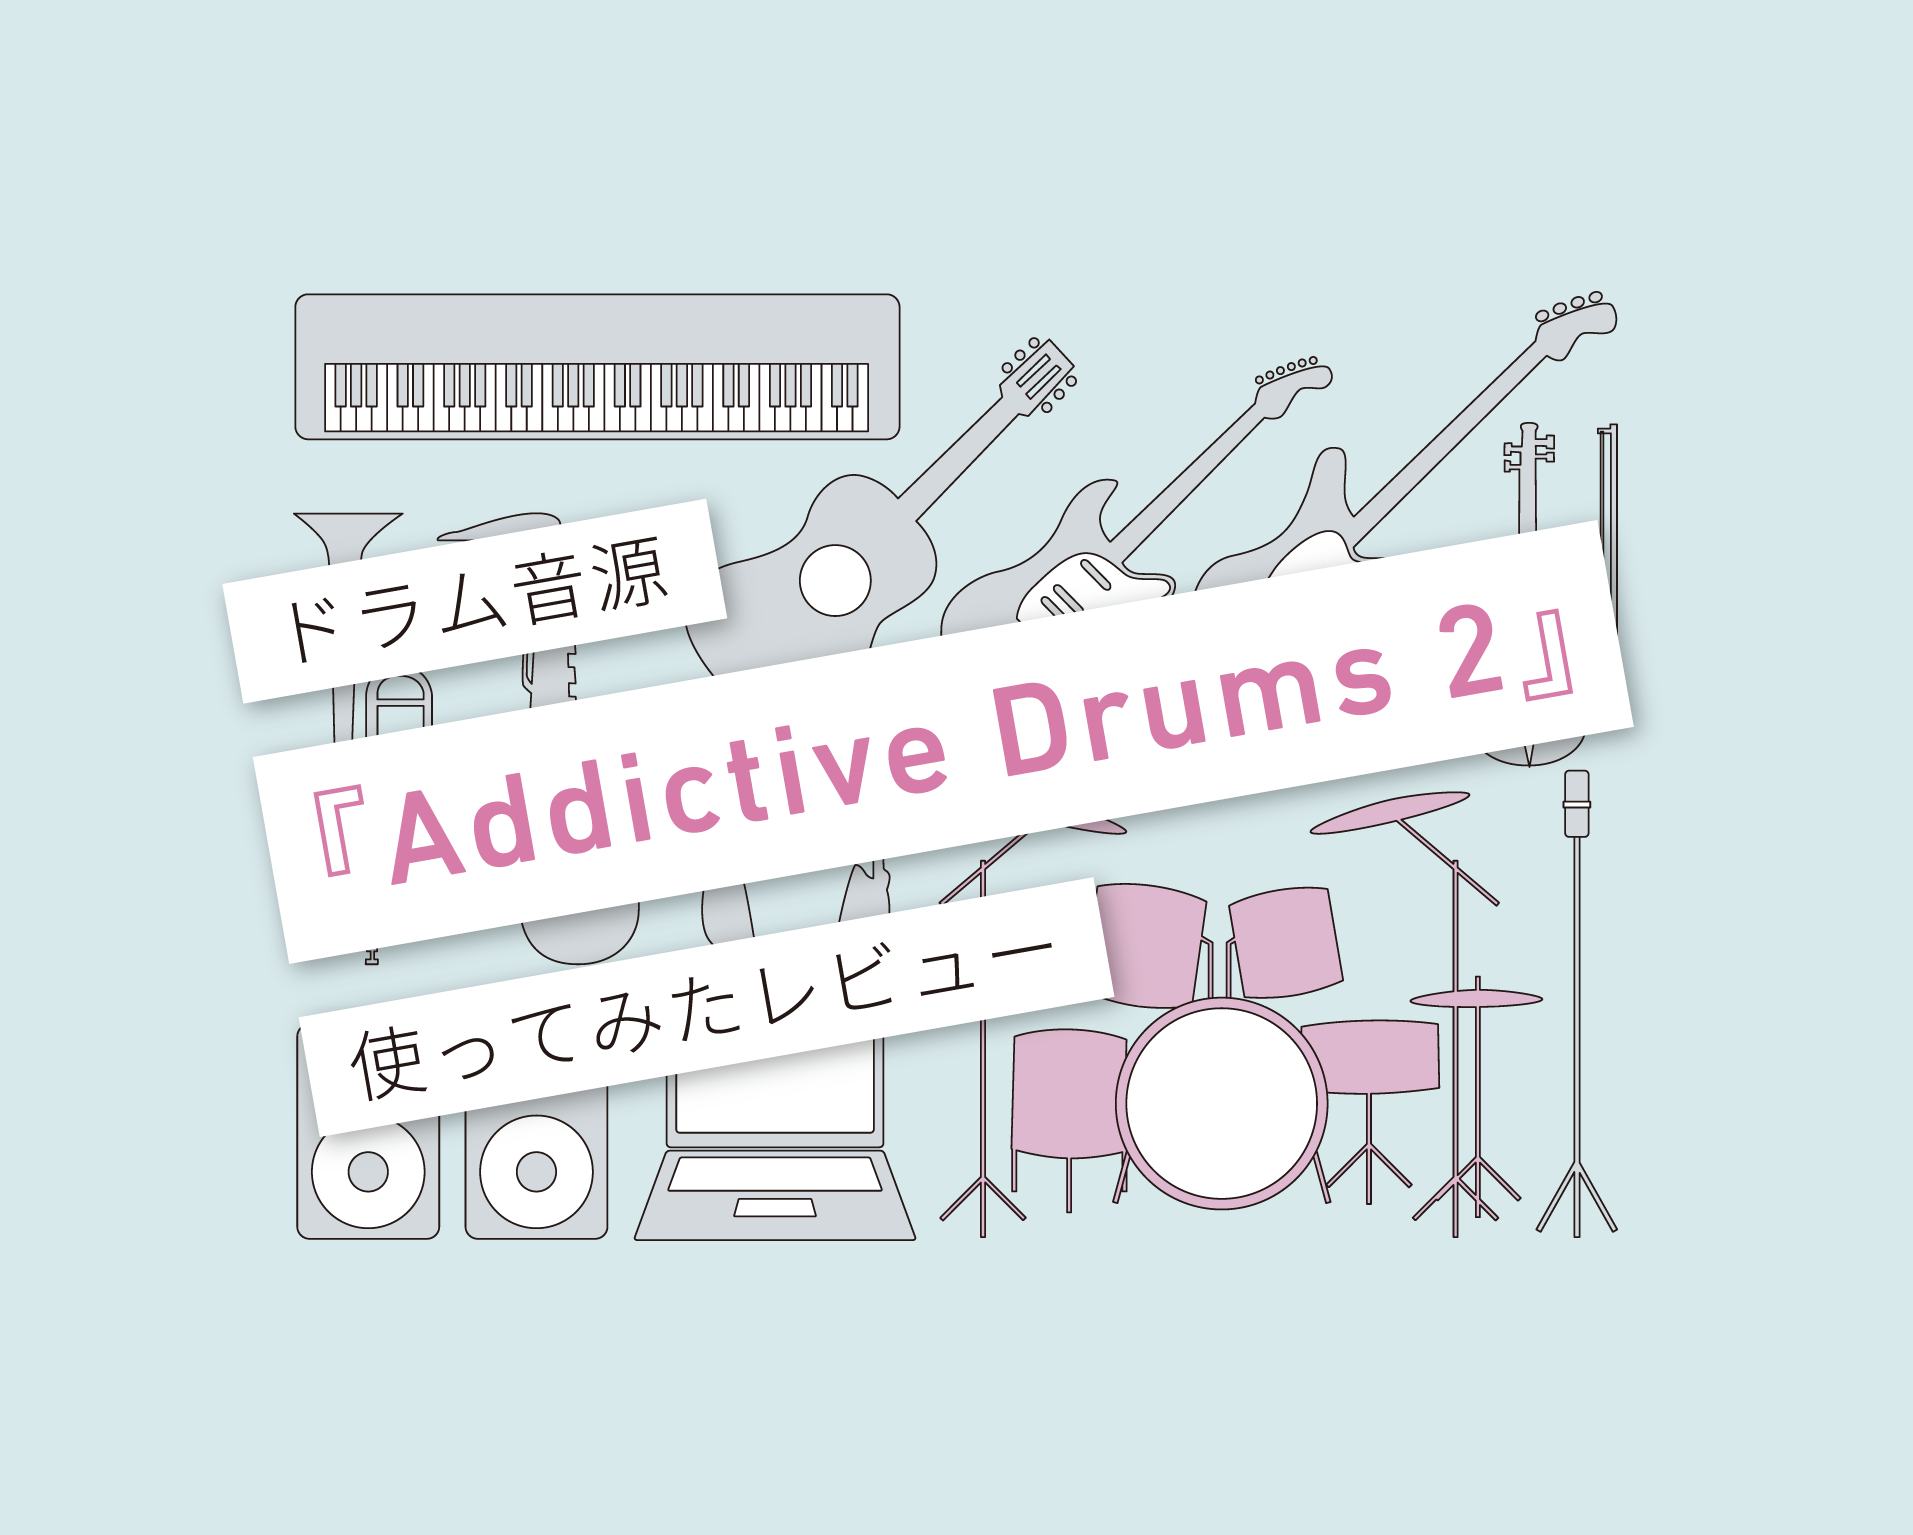 descargar addictive drums 2 full completo 2017